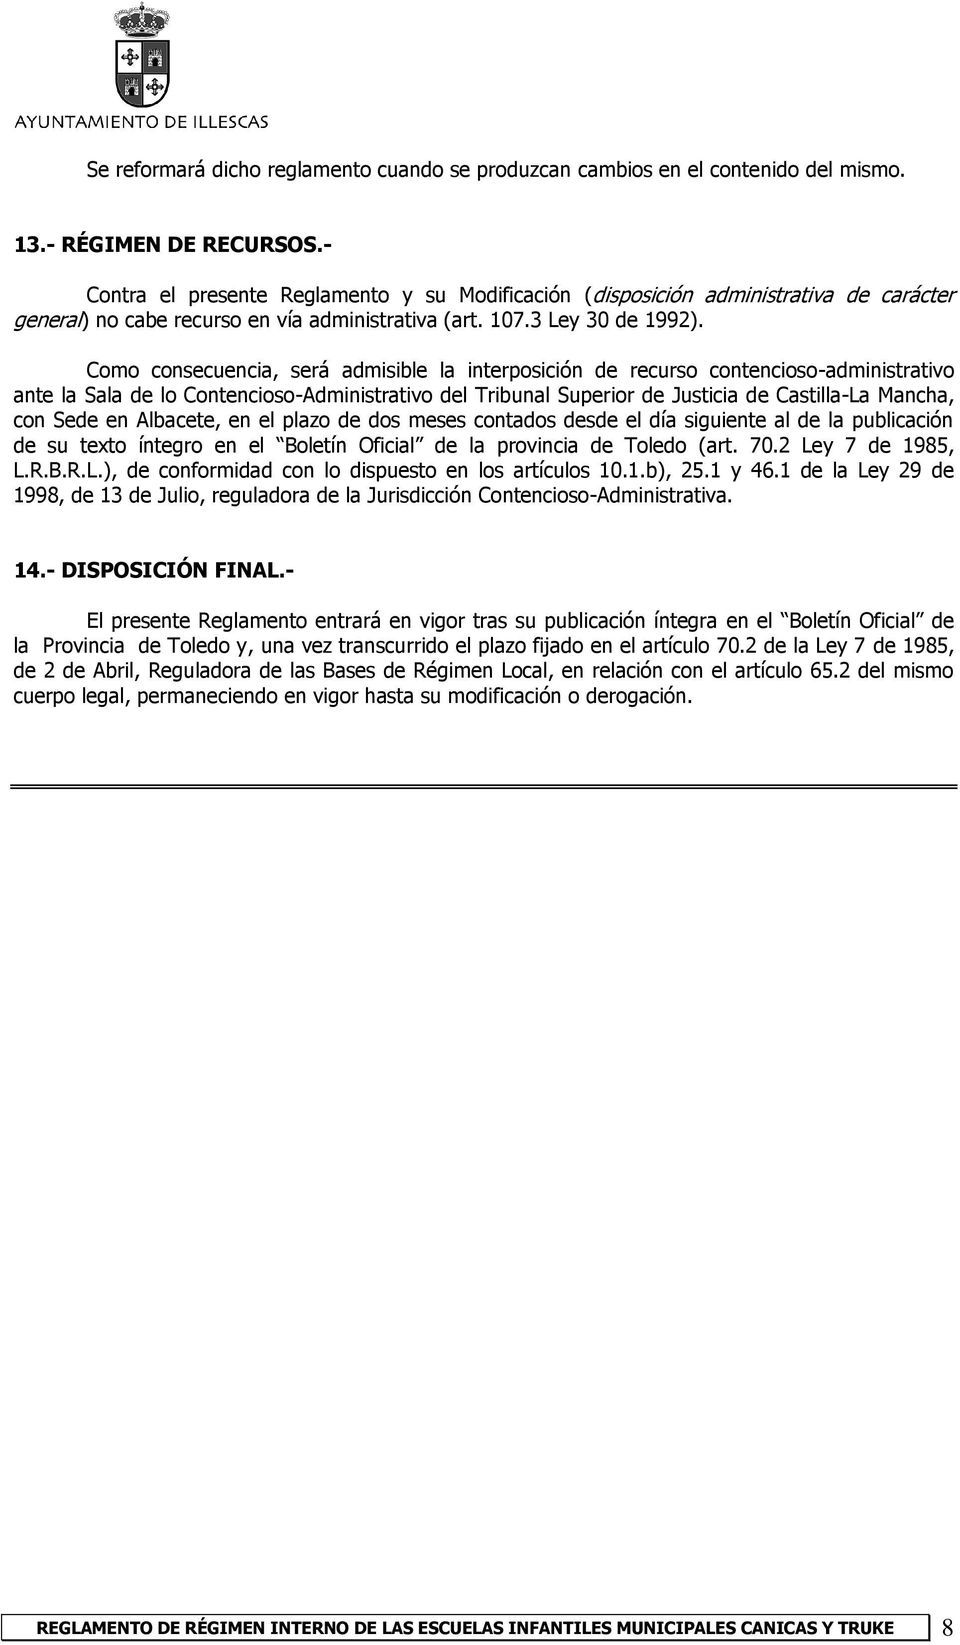 Como consecuencia, será admisible la interposición de recurso contencioso-administrativo ante la Sala de lo Contencioso-Administrativo del Tribunal Superior de Justicia de Castilla-La Mancha, con